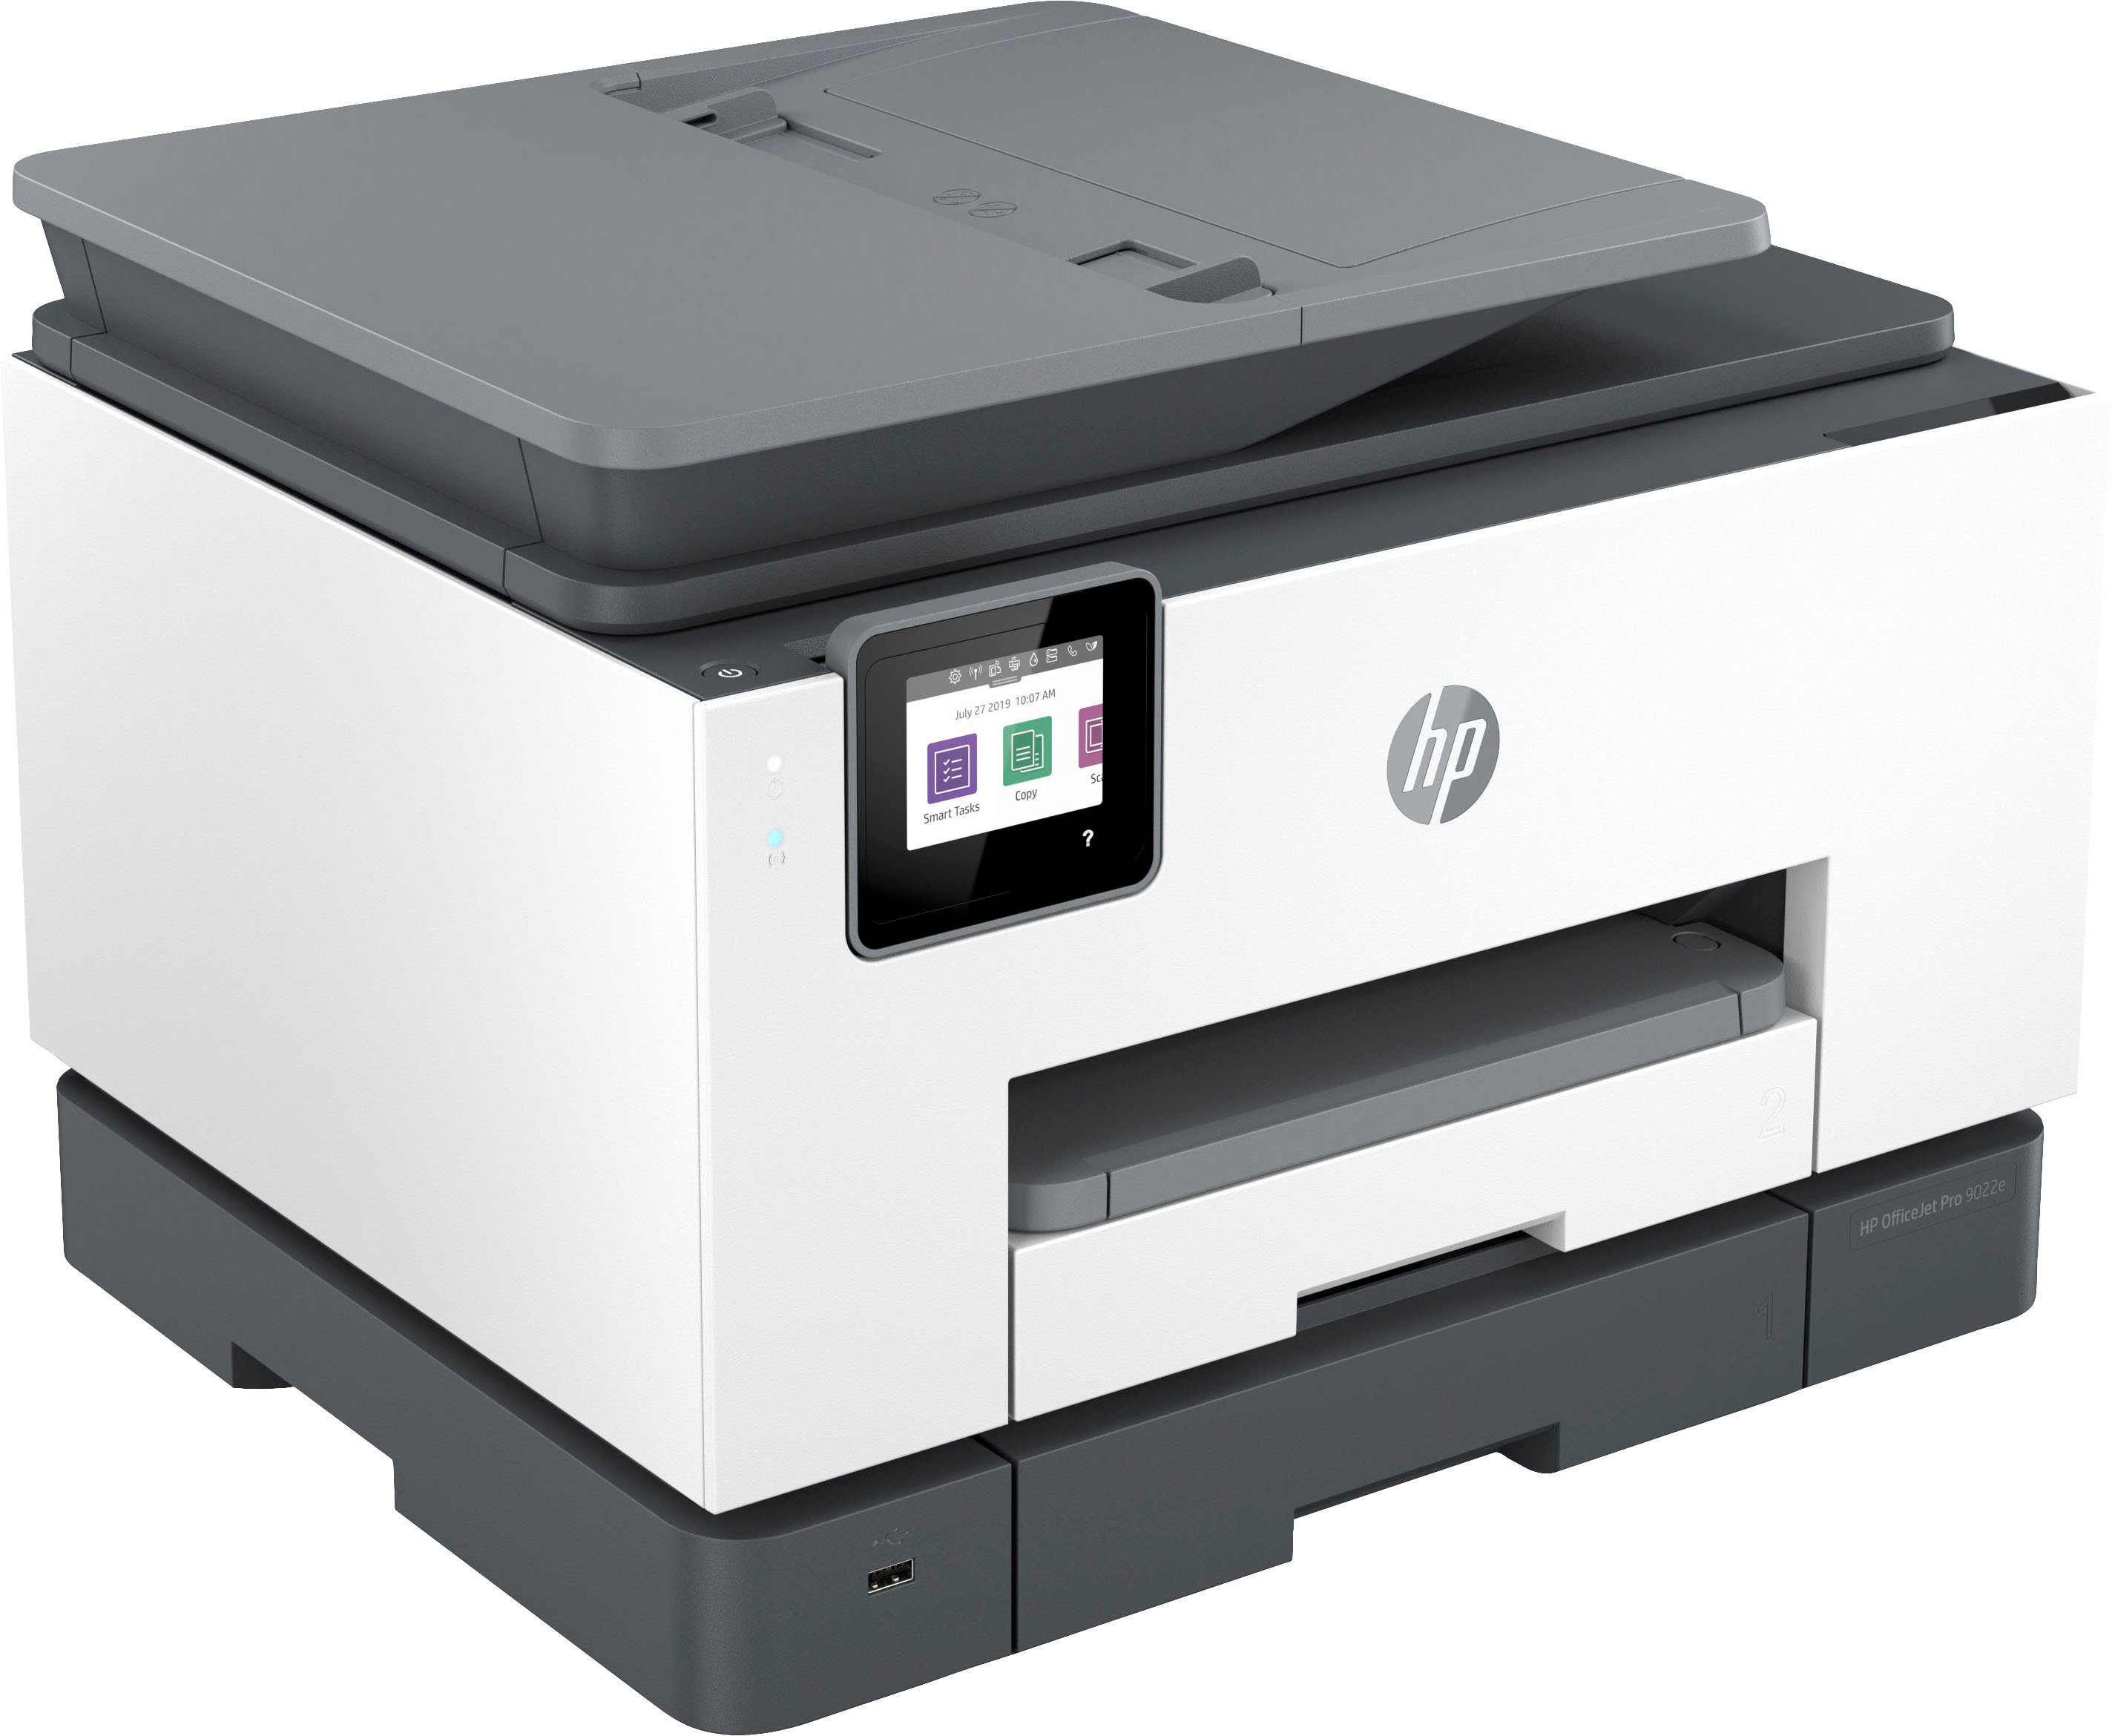 HP OfficeJet Pro HP+ WLAN Ink (LAN AiO (Ethernet), color 9022e A4 kompatibel) (Wi-Fi), Instant Multifunktionsdrucker